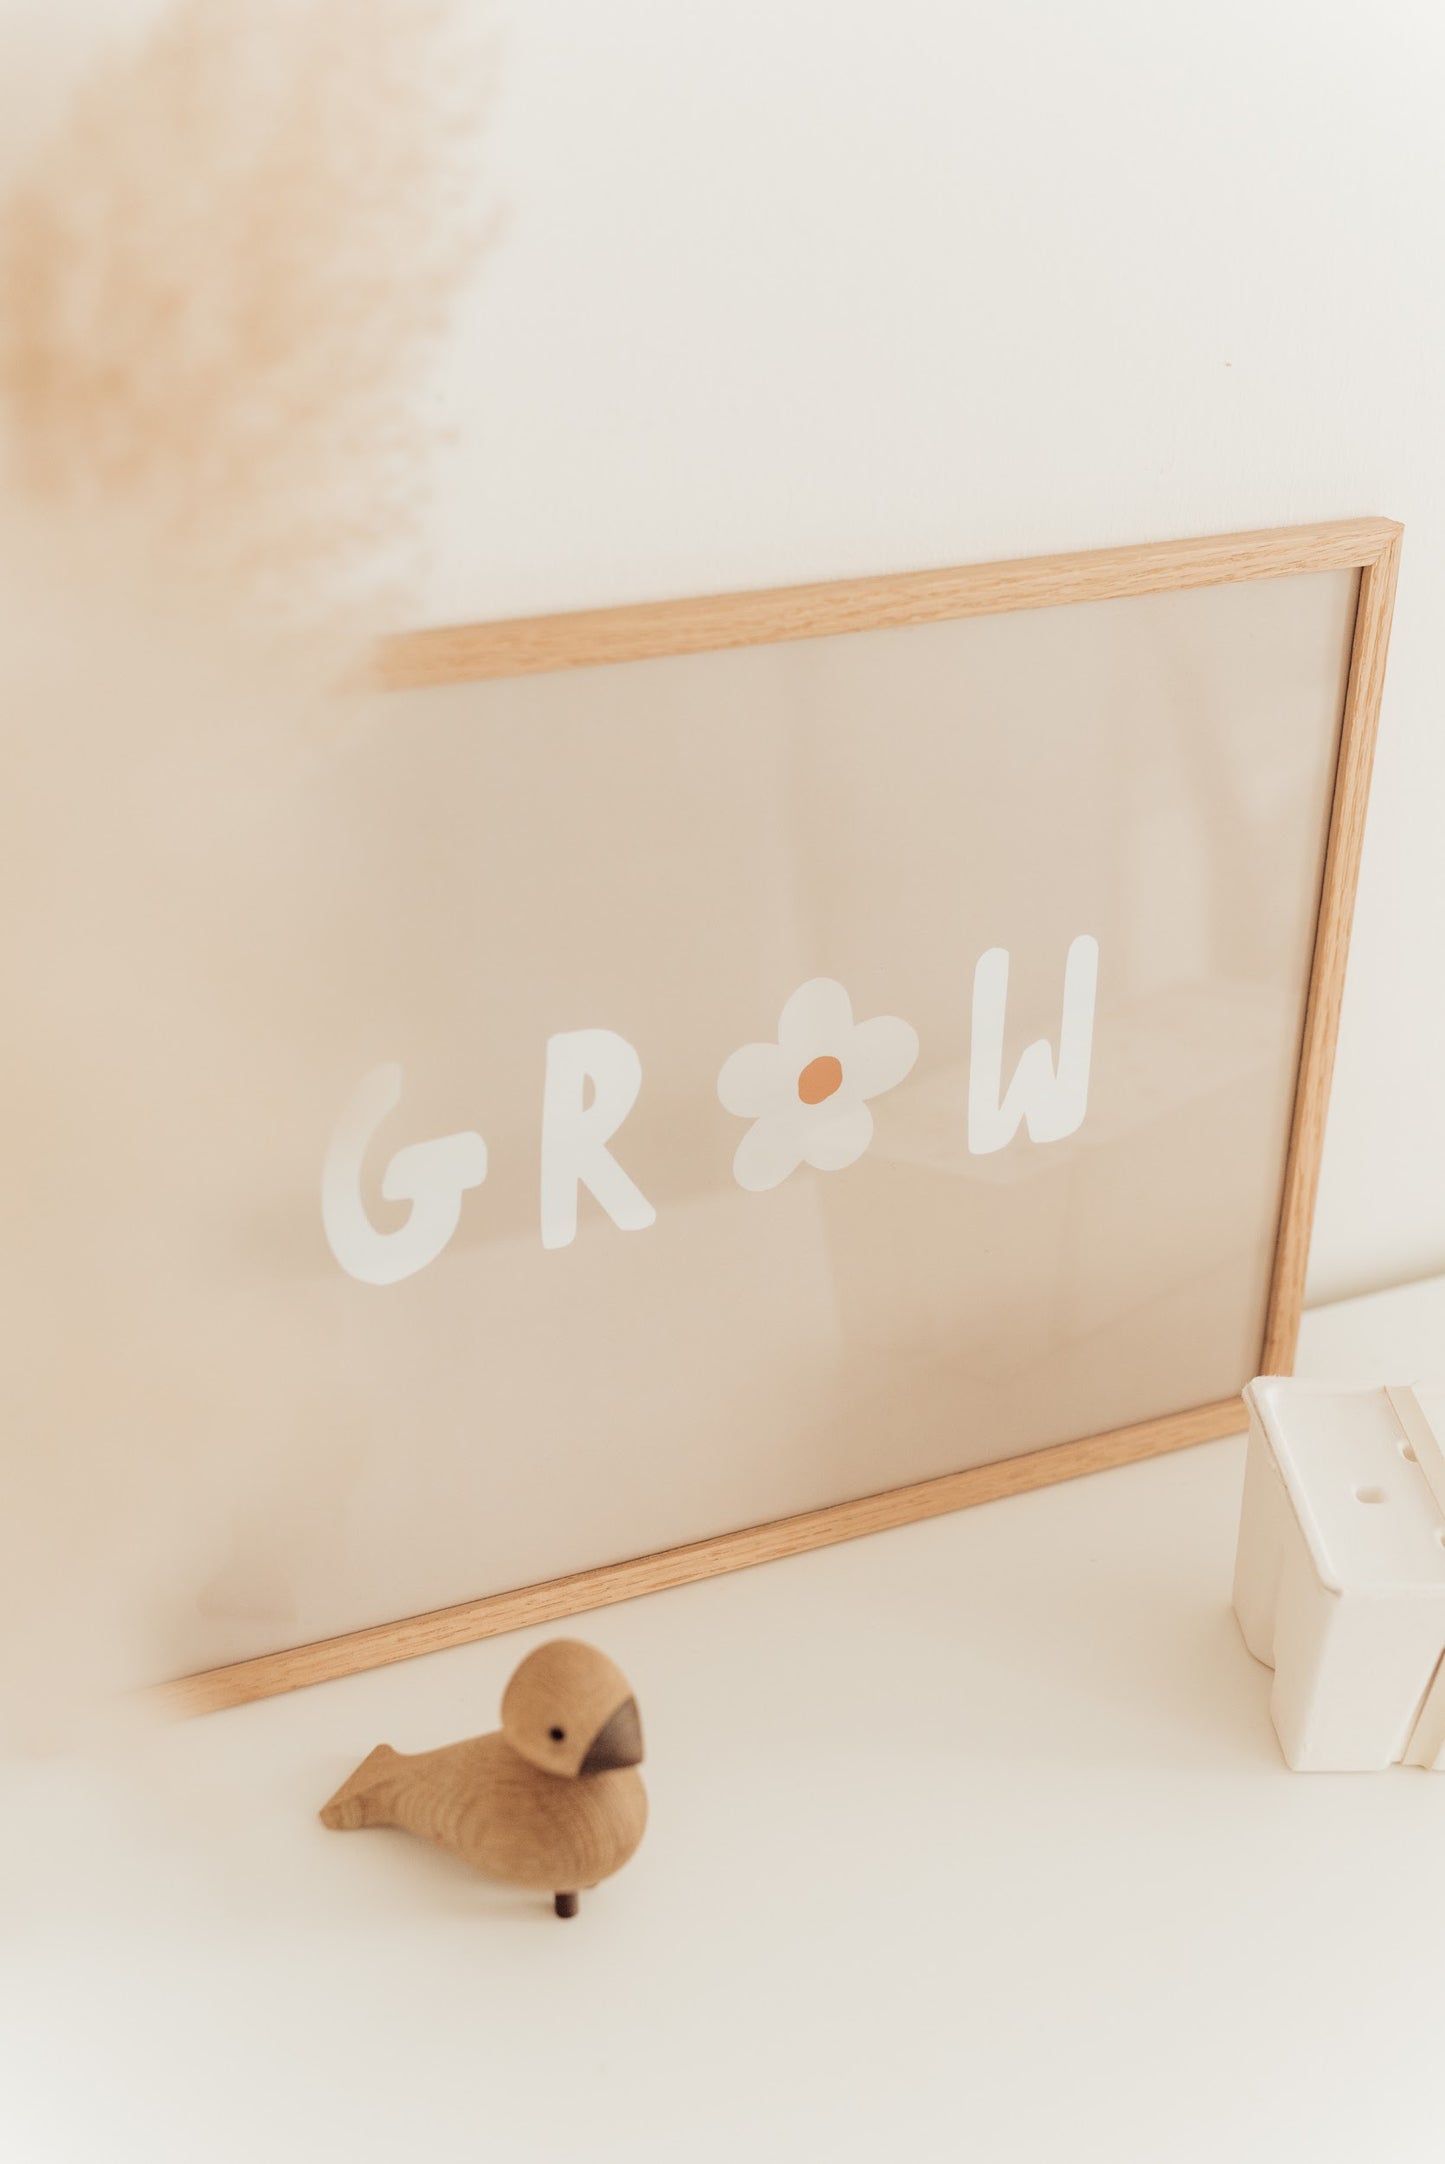 Grow - A3 Poster